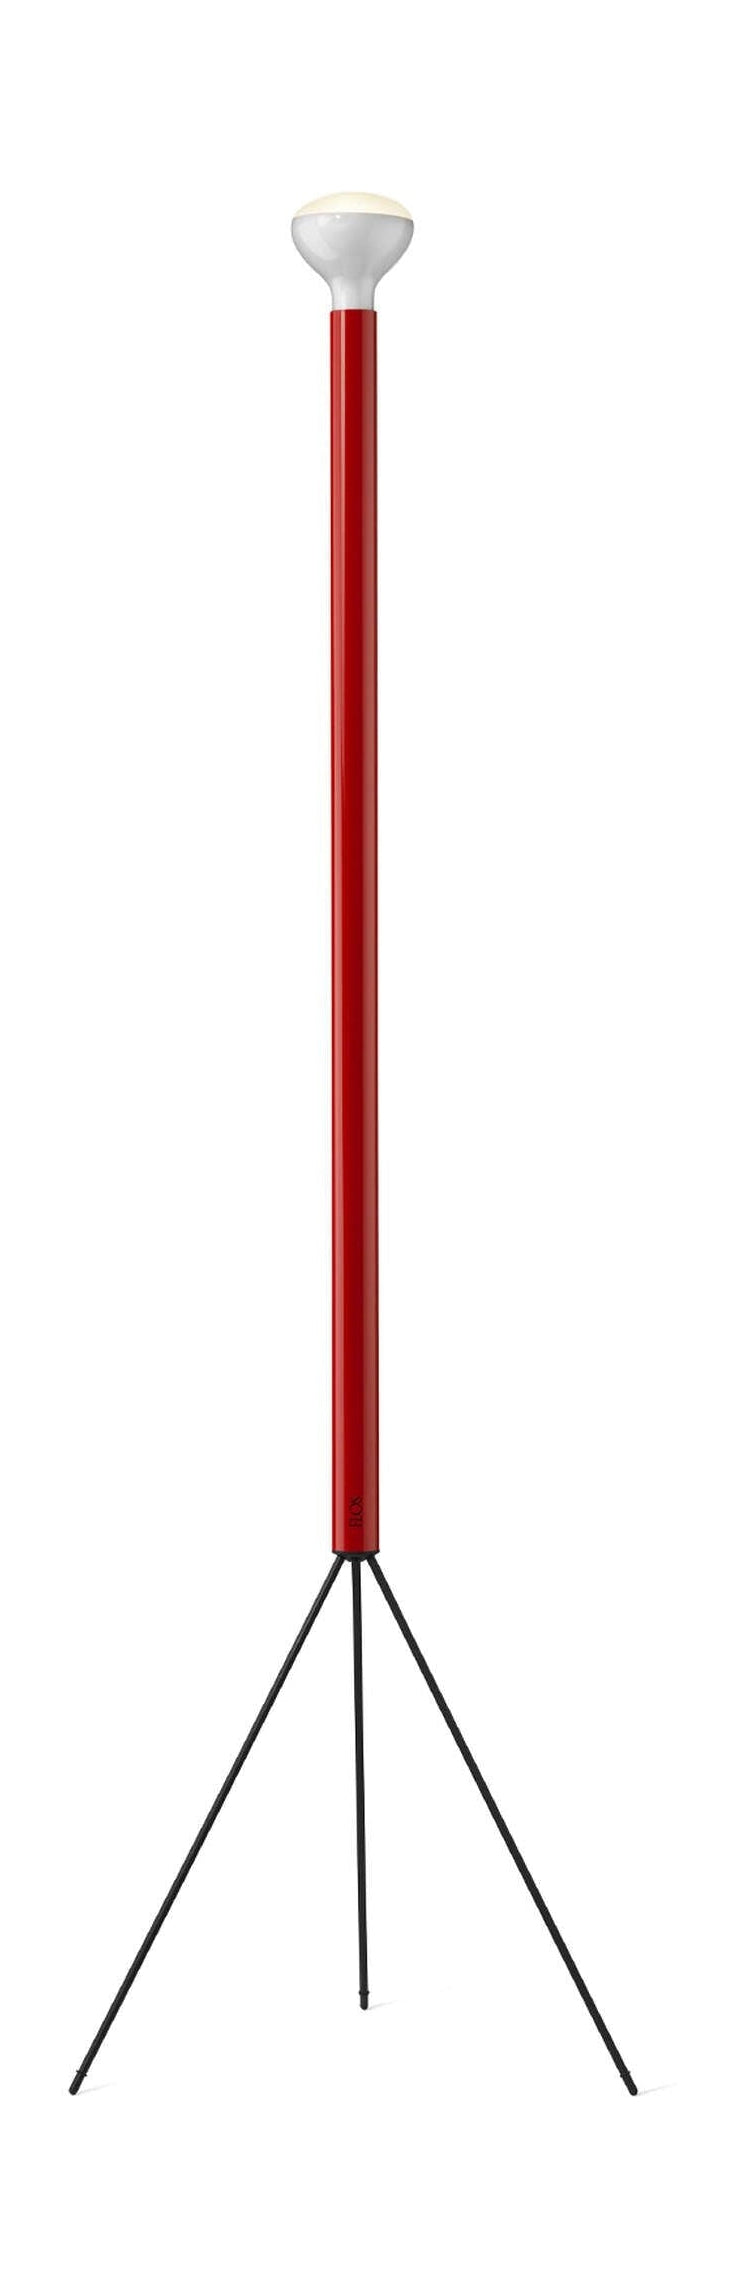 Flos Luminator vloerlamp, rood